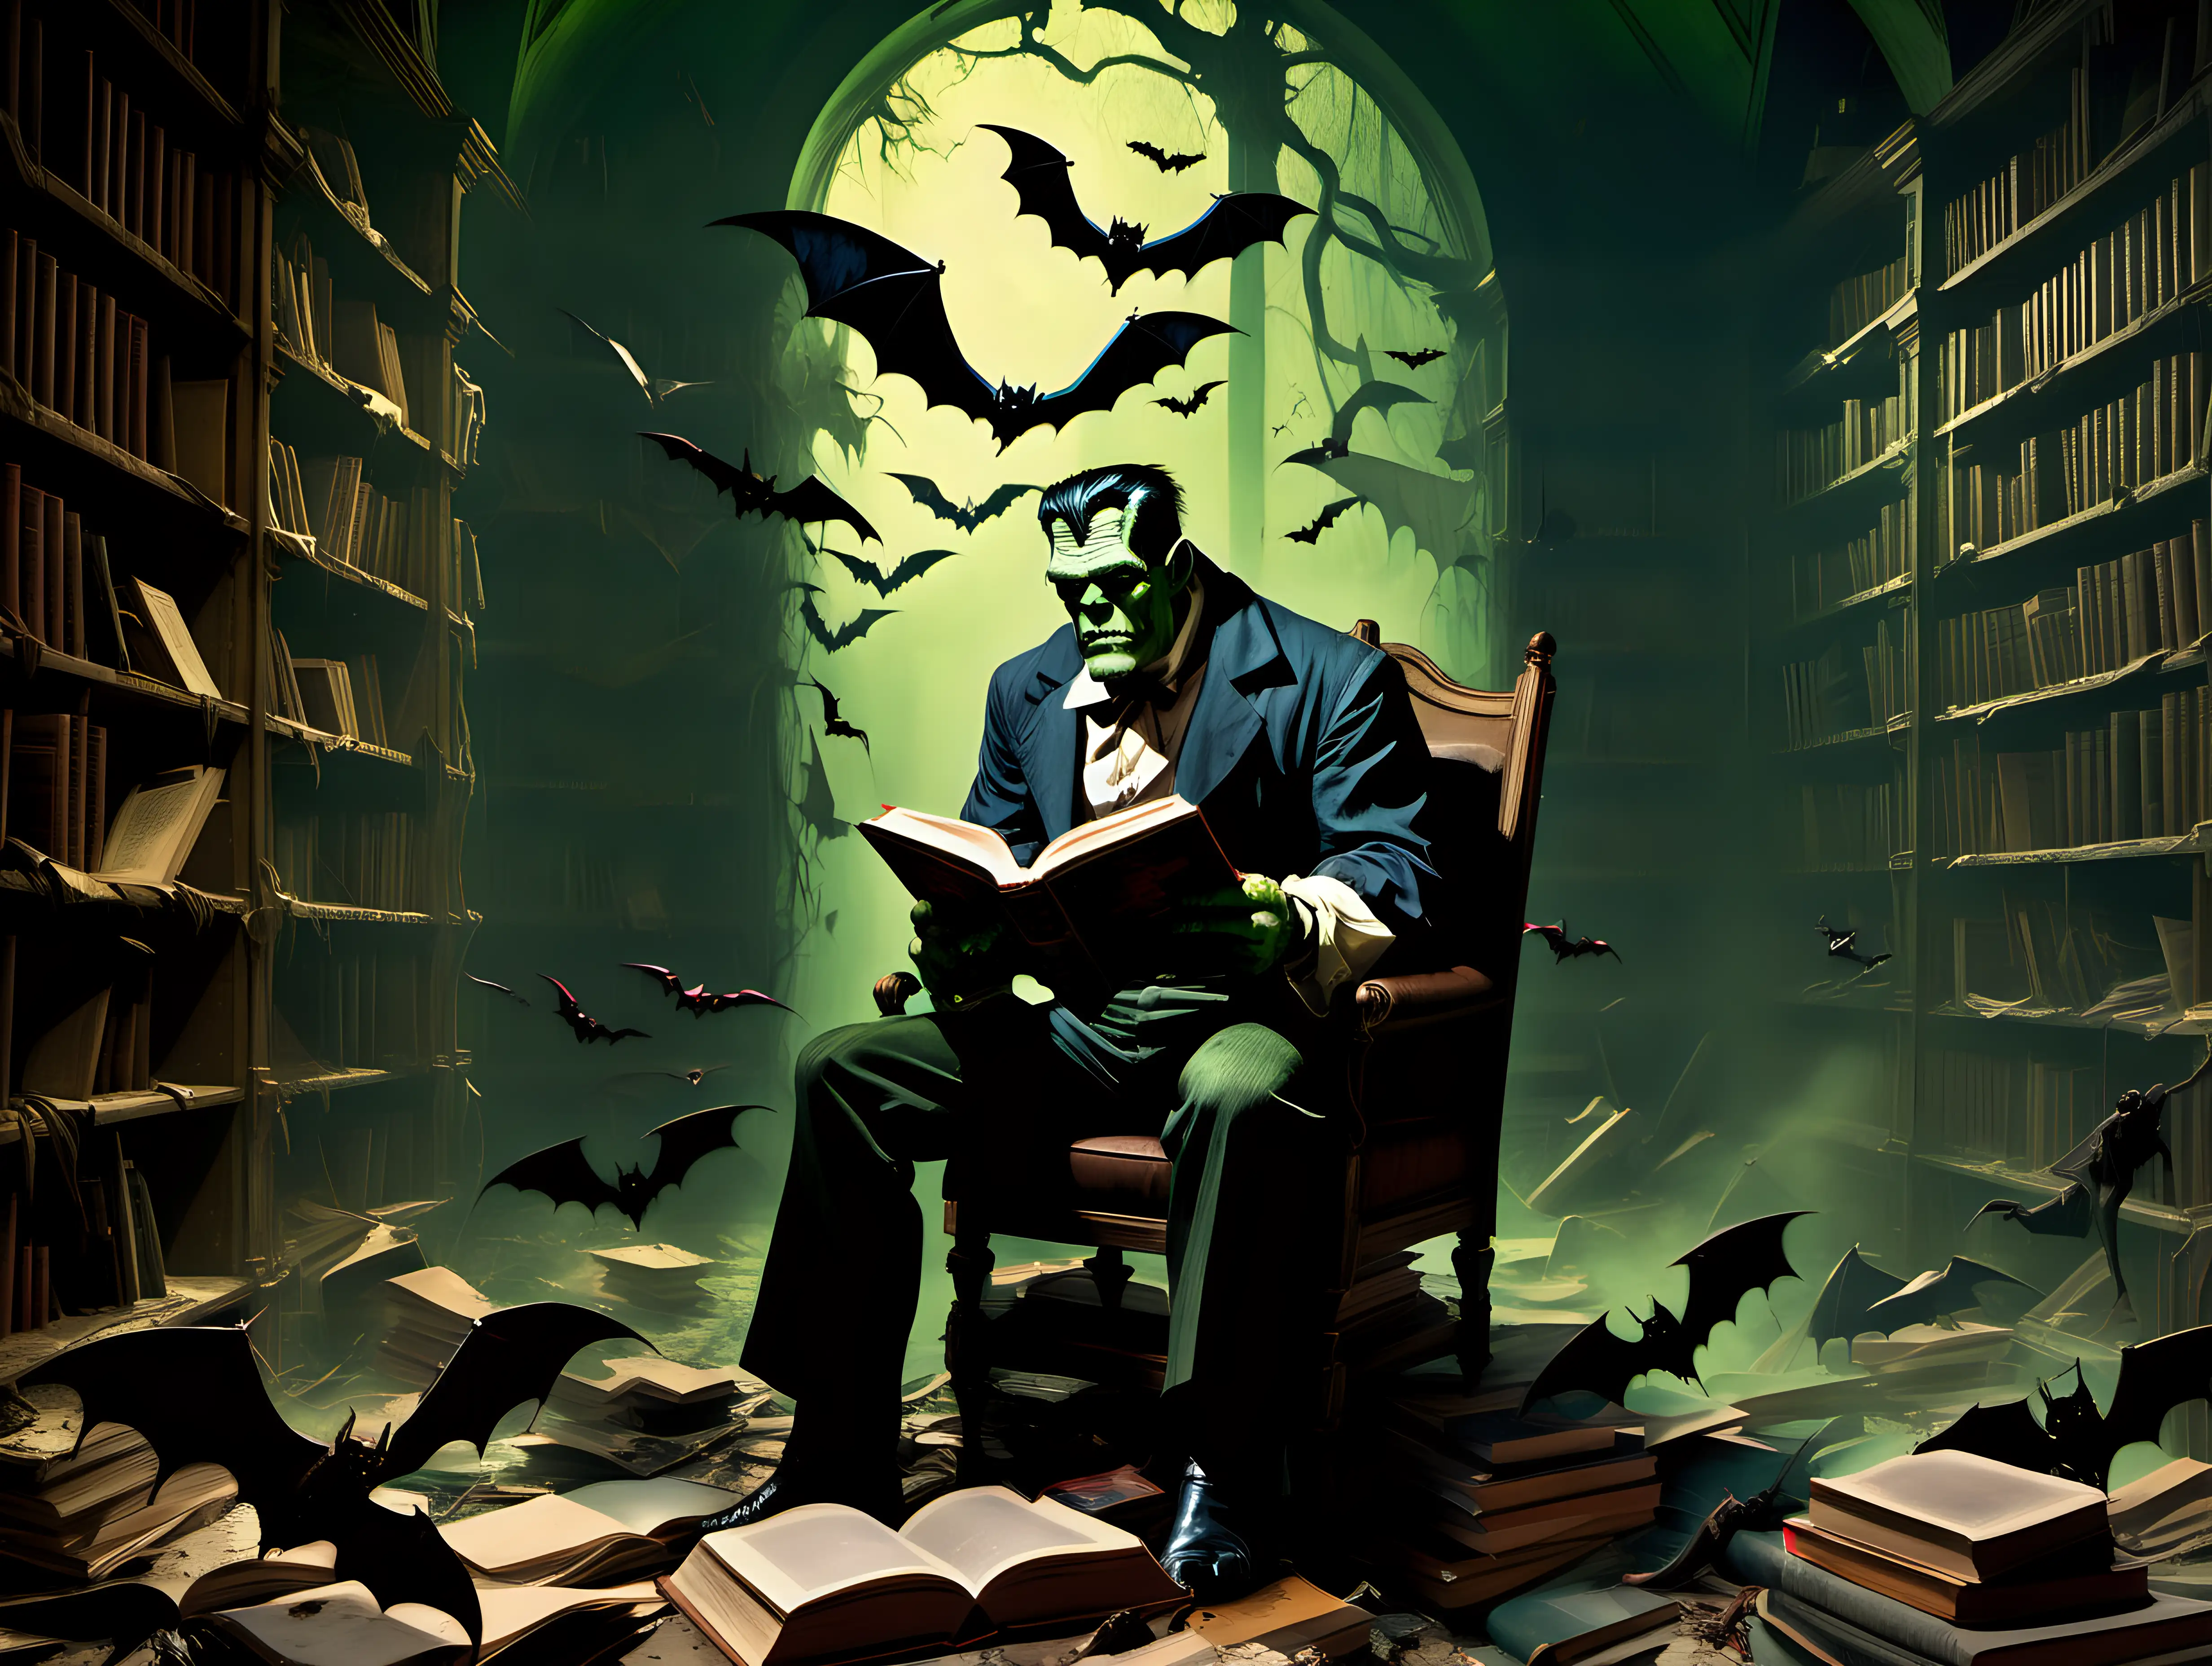 Frankenstein Reading in Abandoned Library with Vampire Bats FrazettaInspired Art